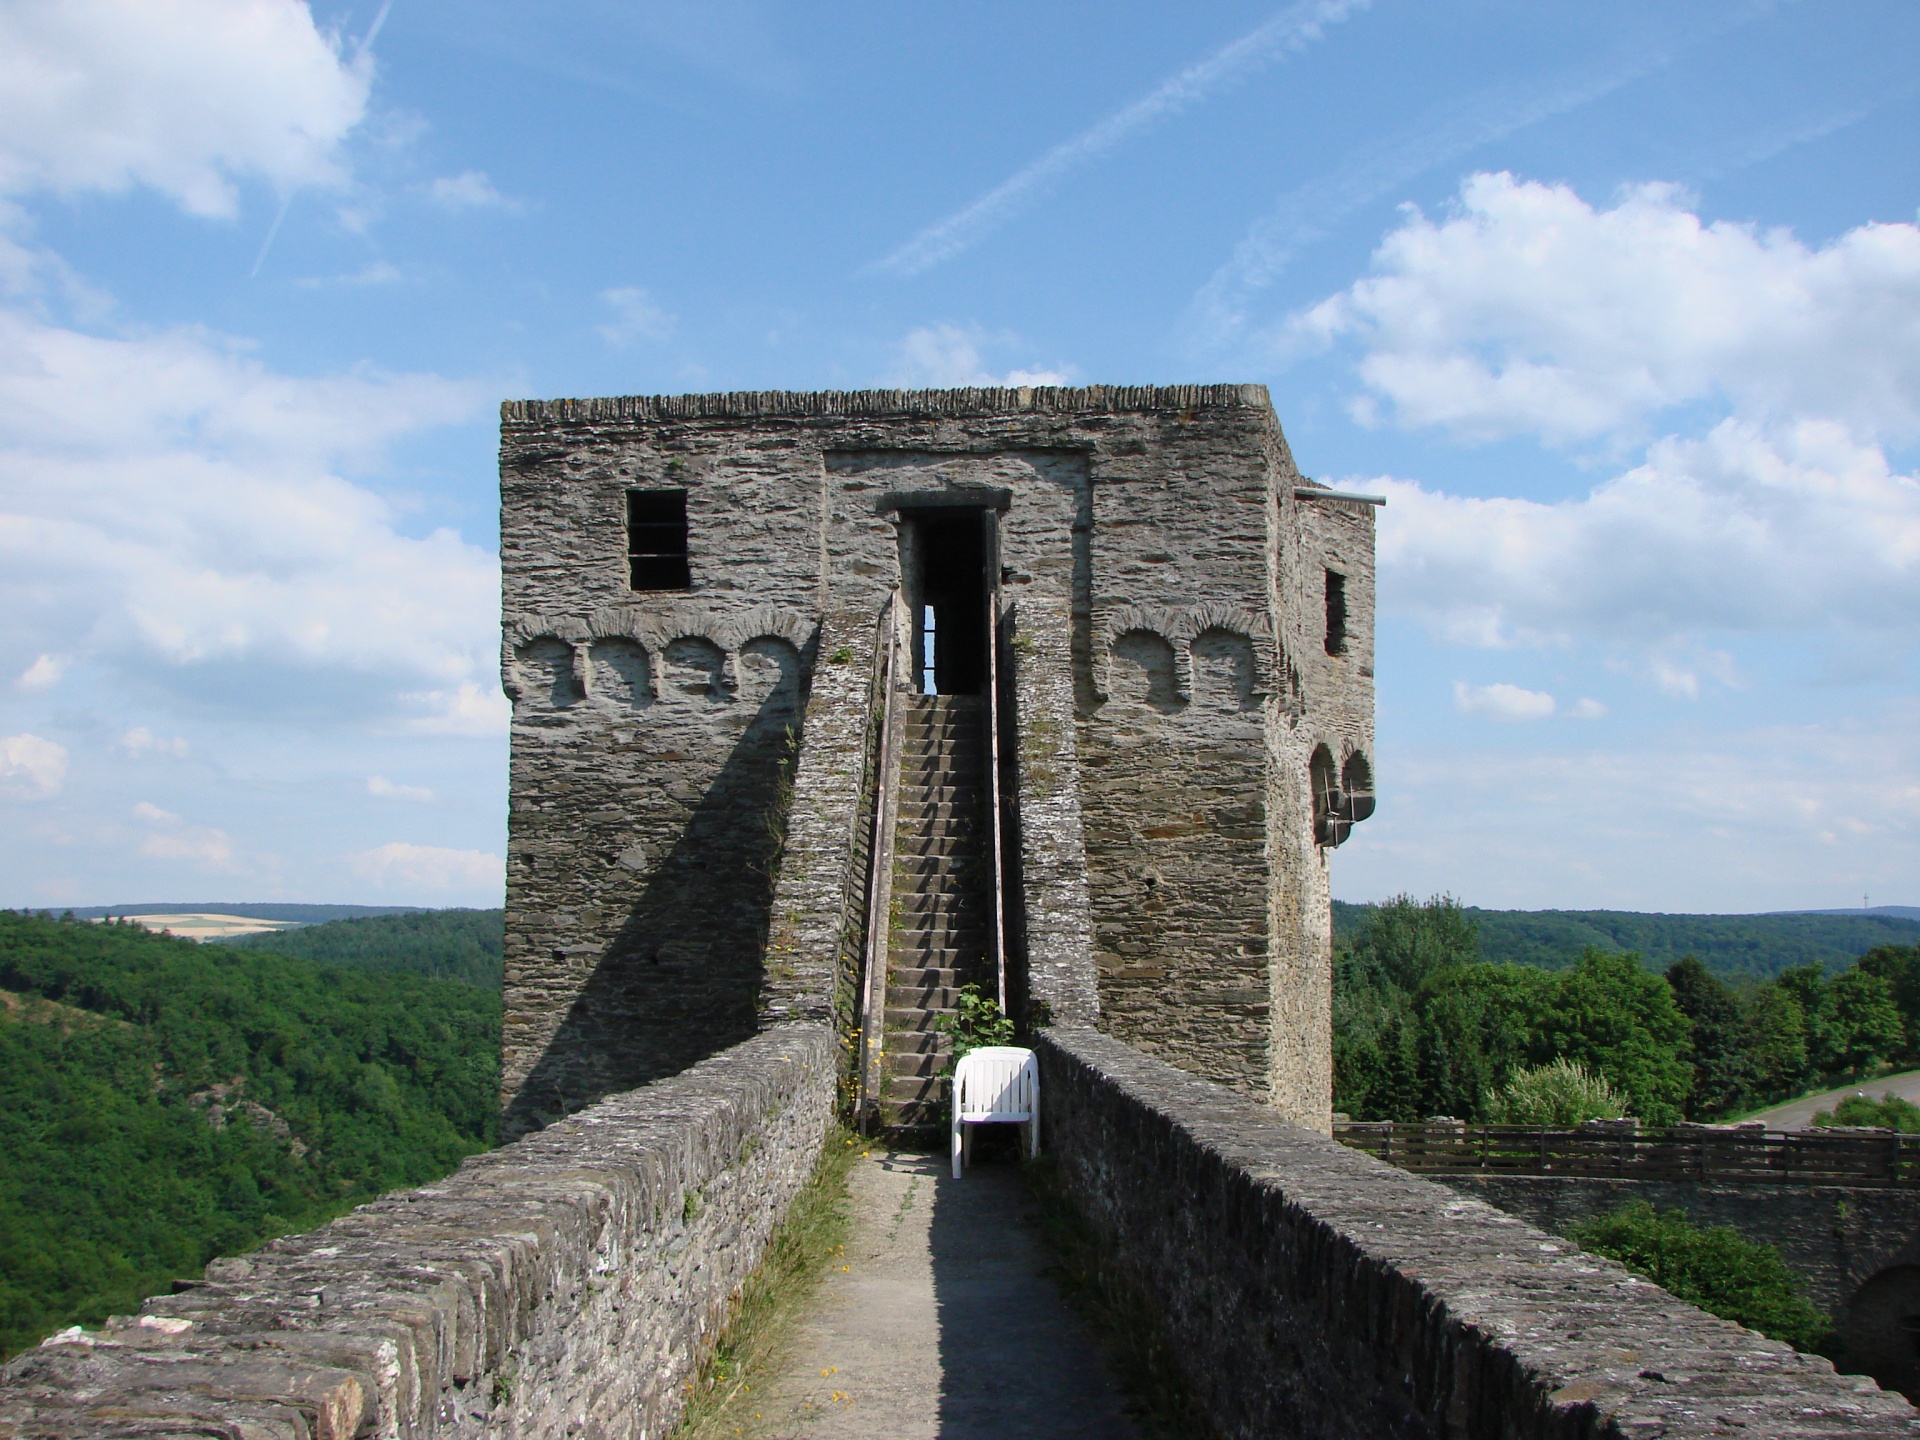 中世纪城堡海恩斯坦